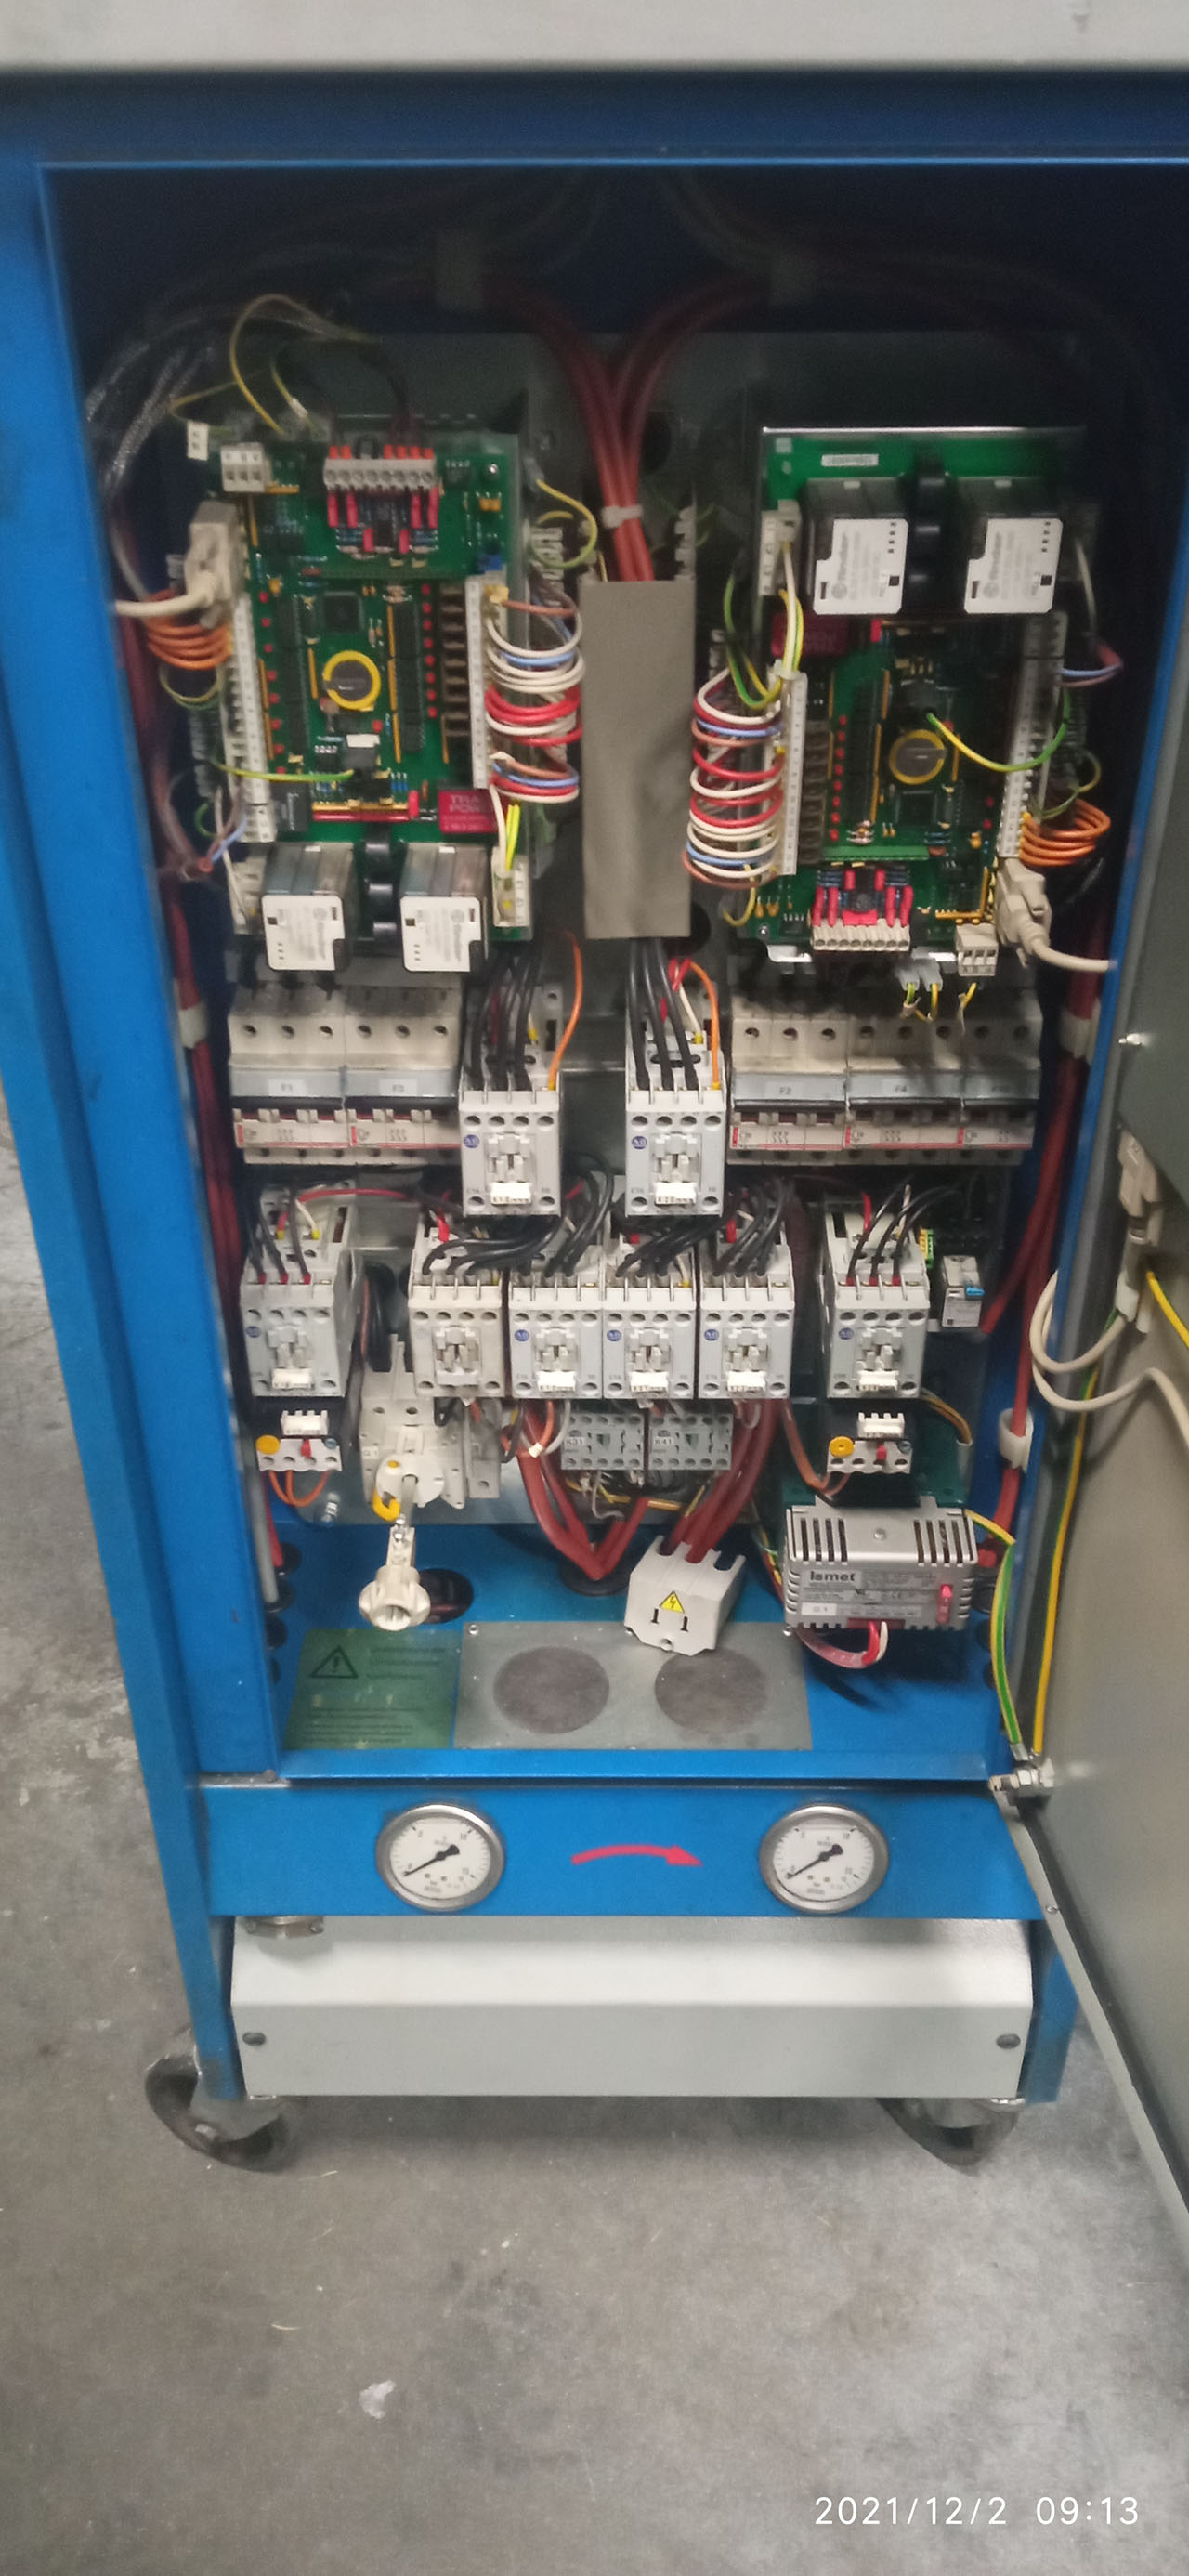 Robamat Thermocast 2212 sıcaklık kontrol ünitesi ZU2161, kullanılmış